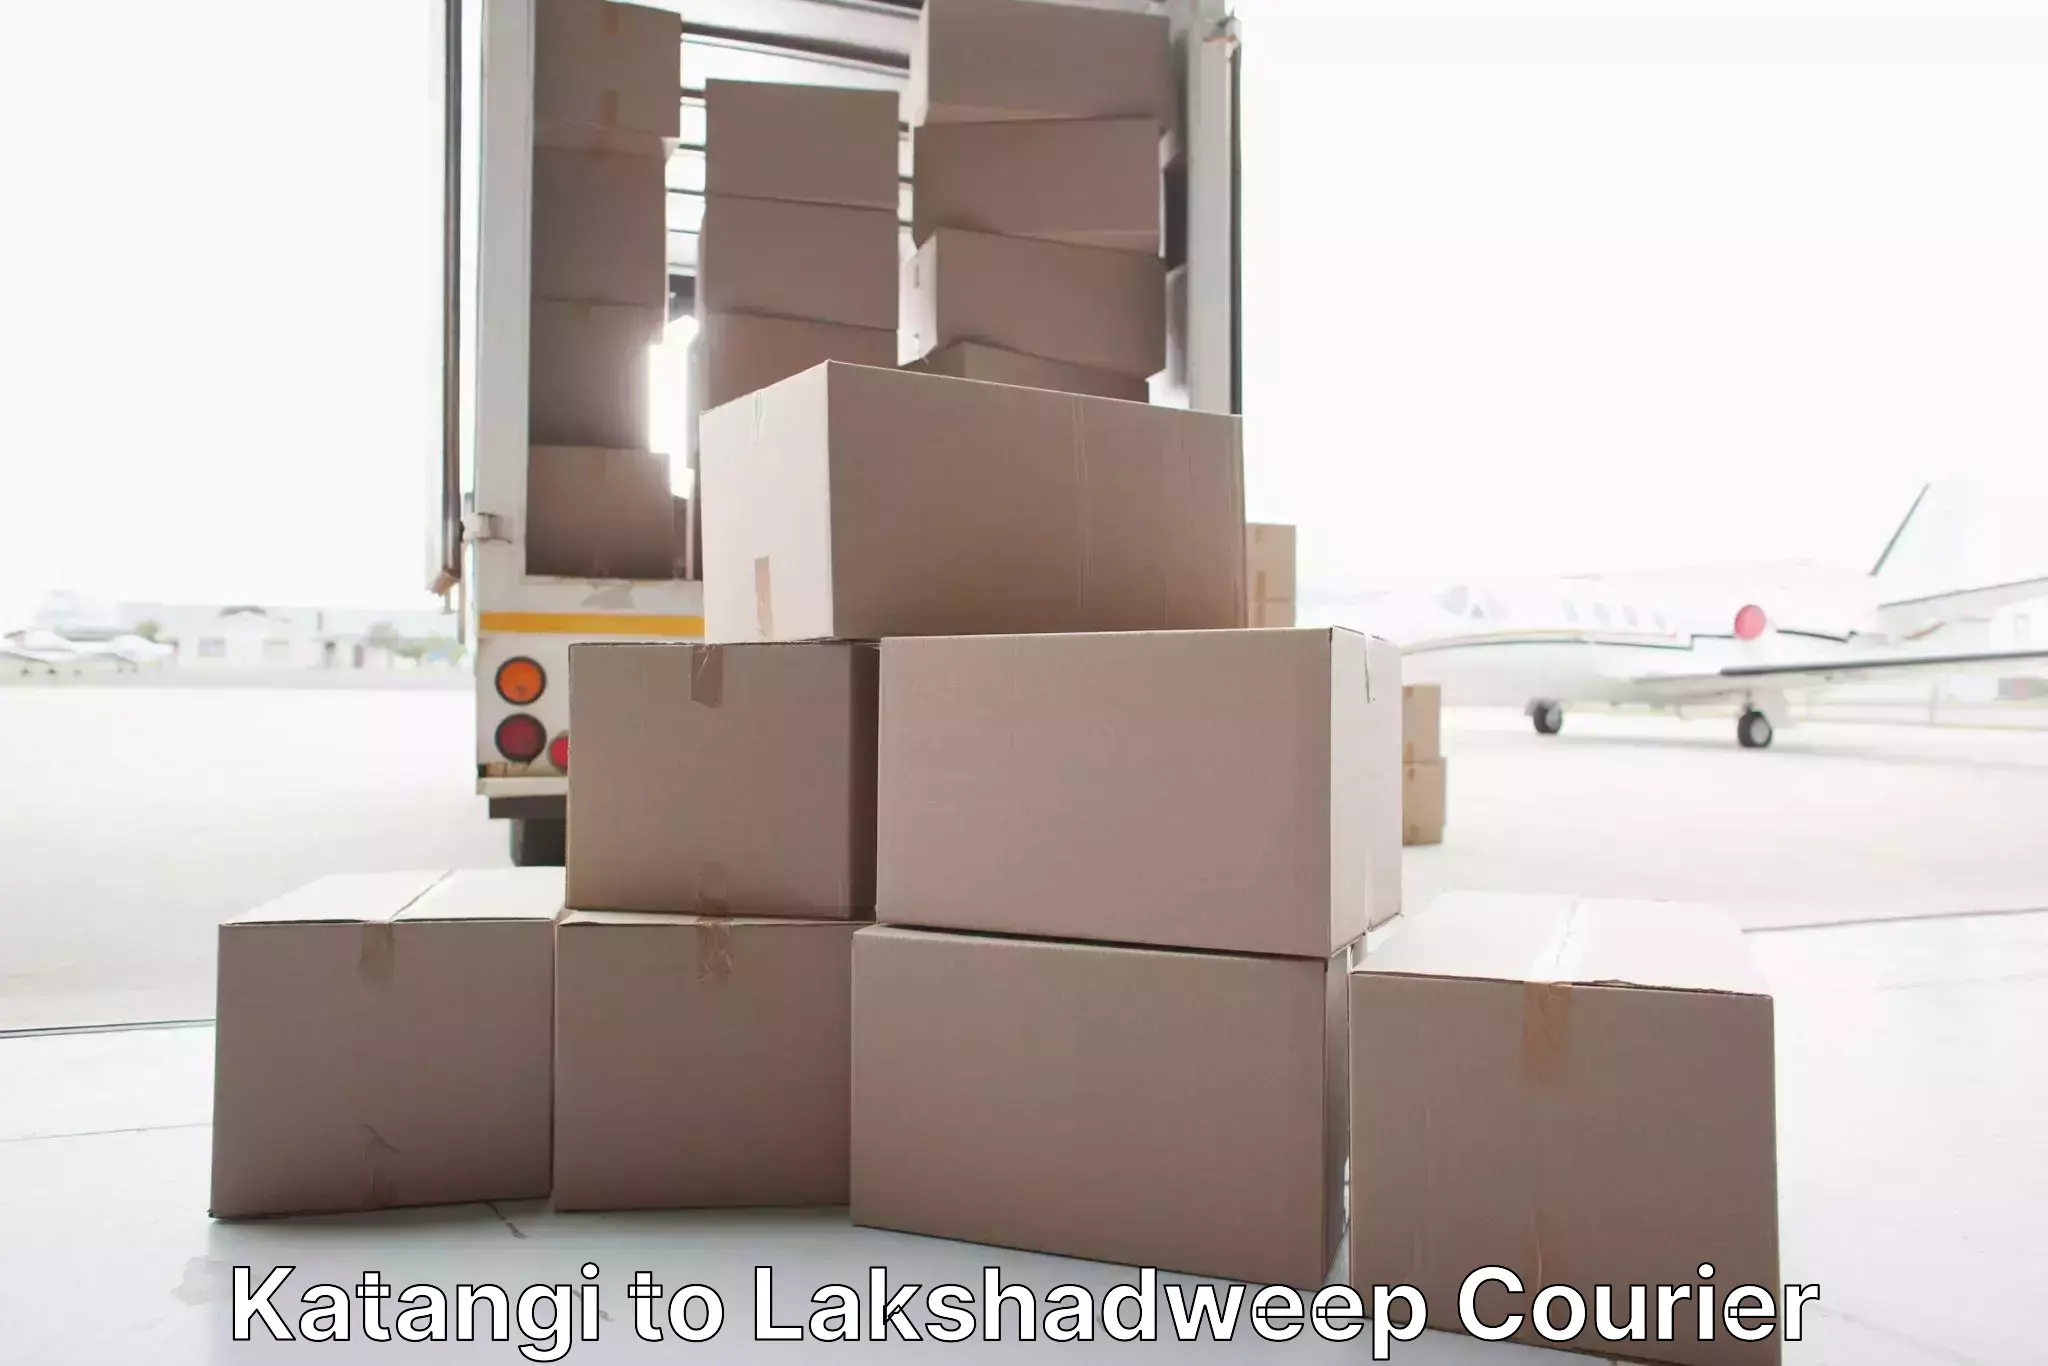 Furniture transport company Katangi to Lakshadweep